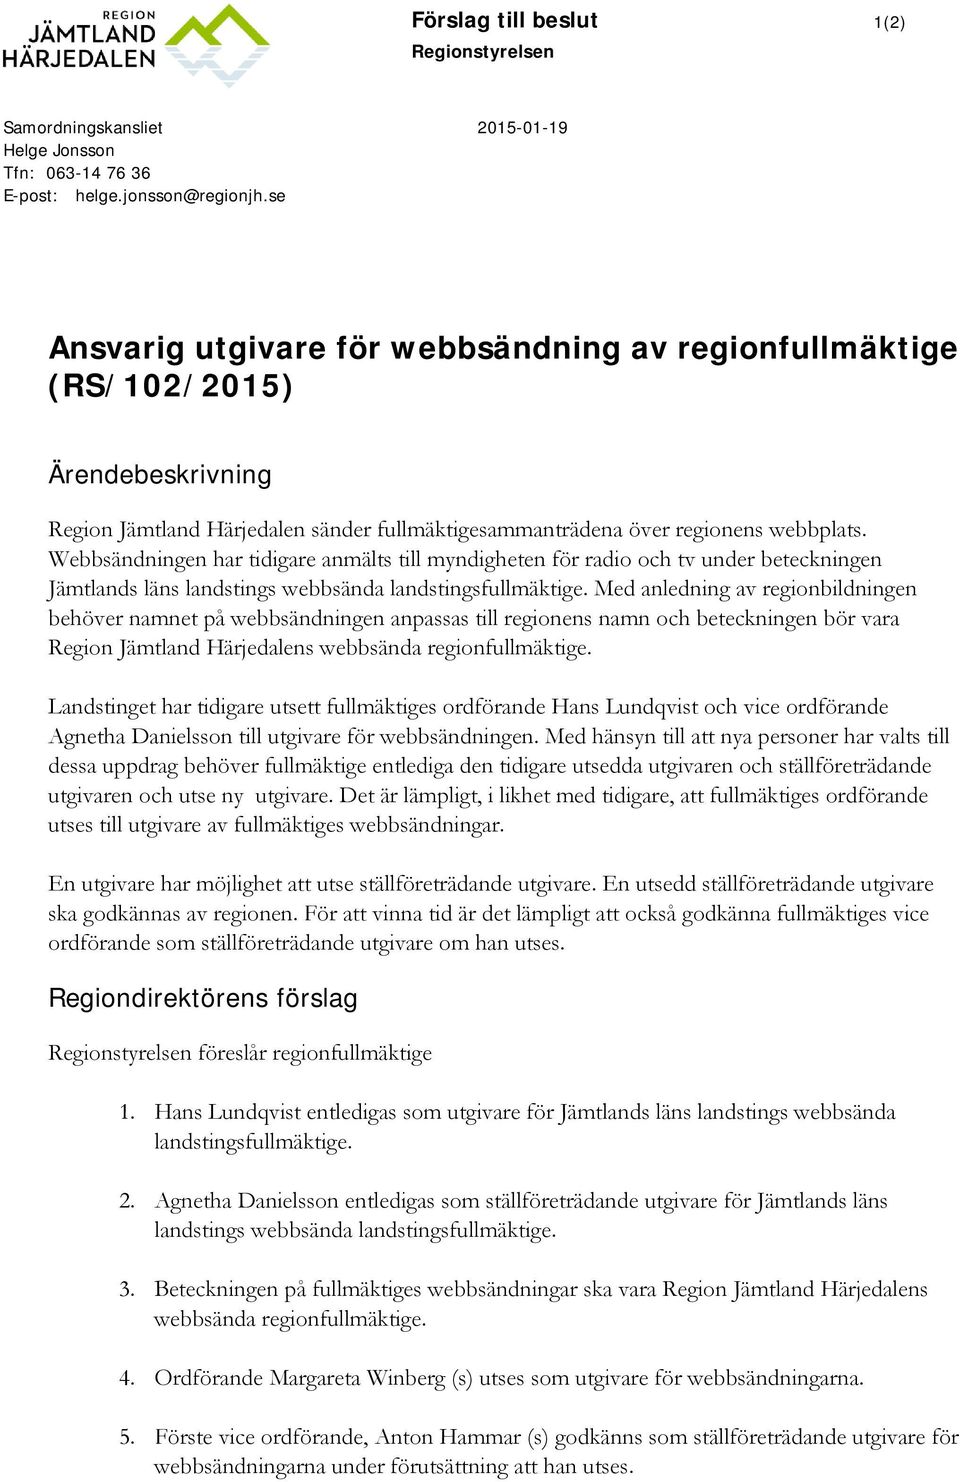 Webbsändningen har tidigare anmälts till myndigheten för radio och tv under beteckningen Jämtlands läns landstings webbsända landstingsfullmäktige.